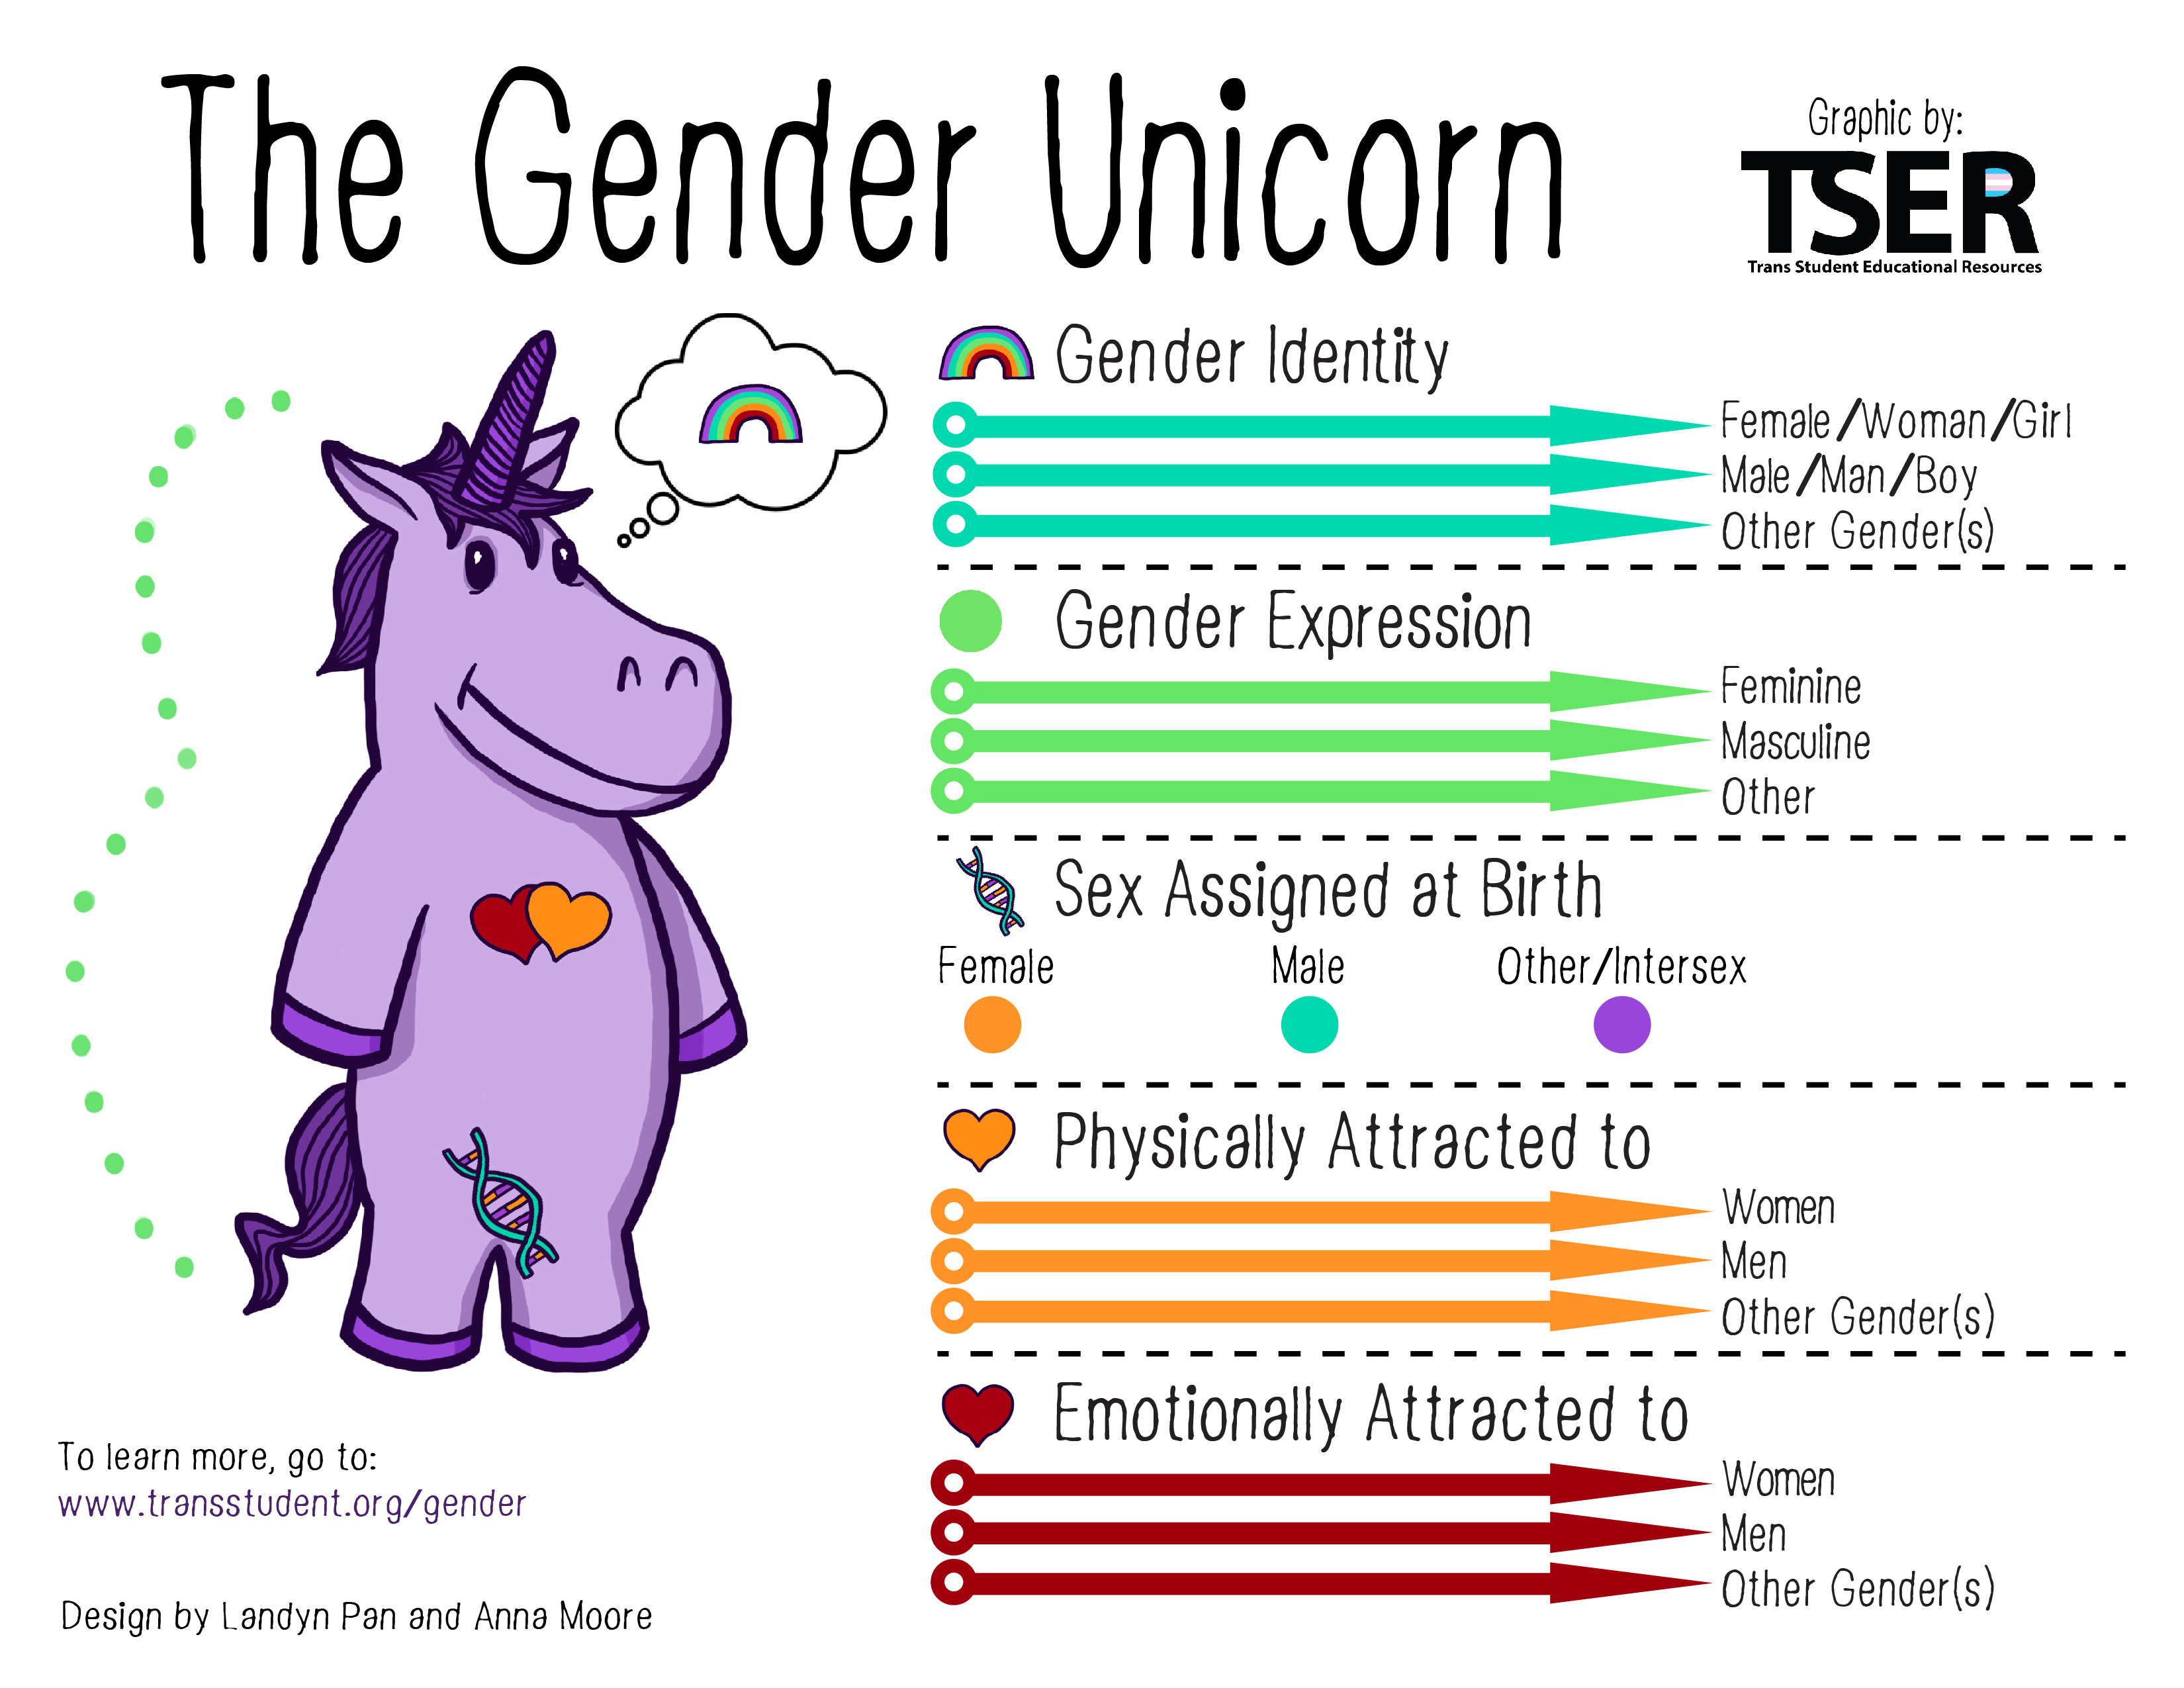 Un instituto censura el unicornio que visibiliza la realidad trans entre los jóvenes